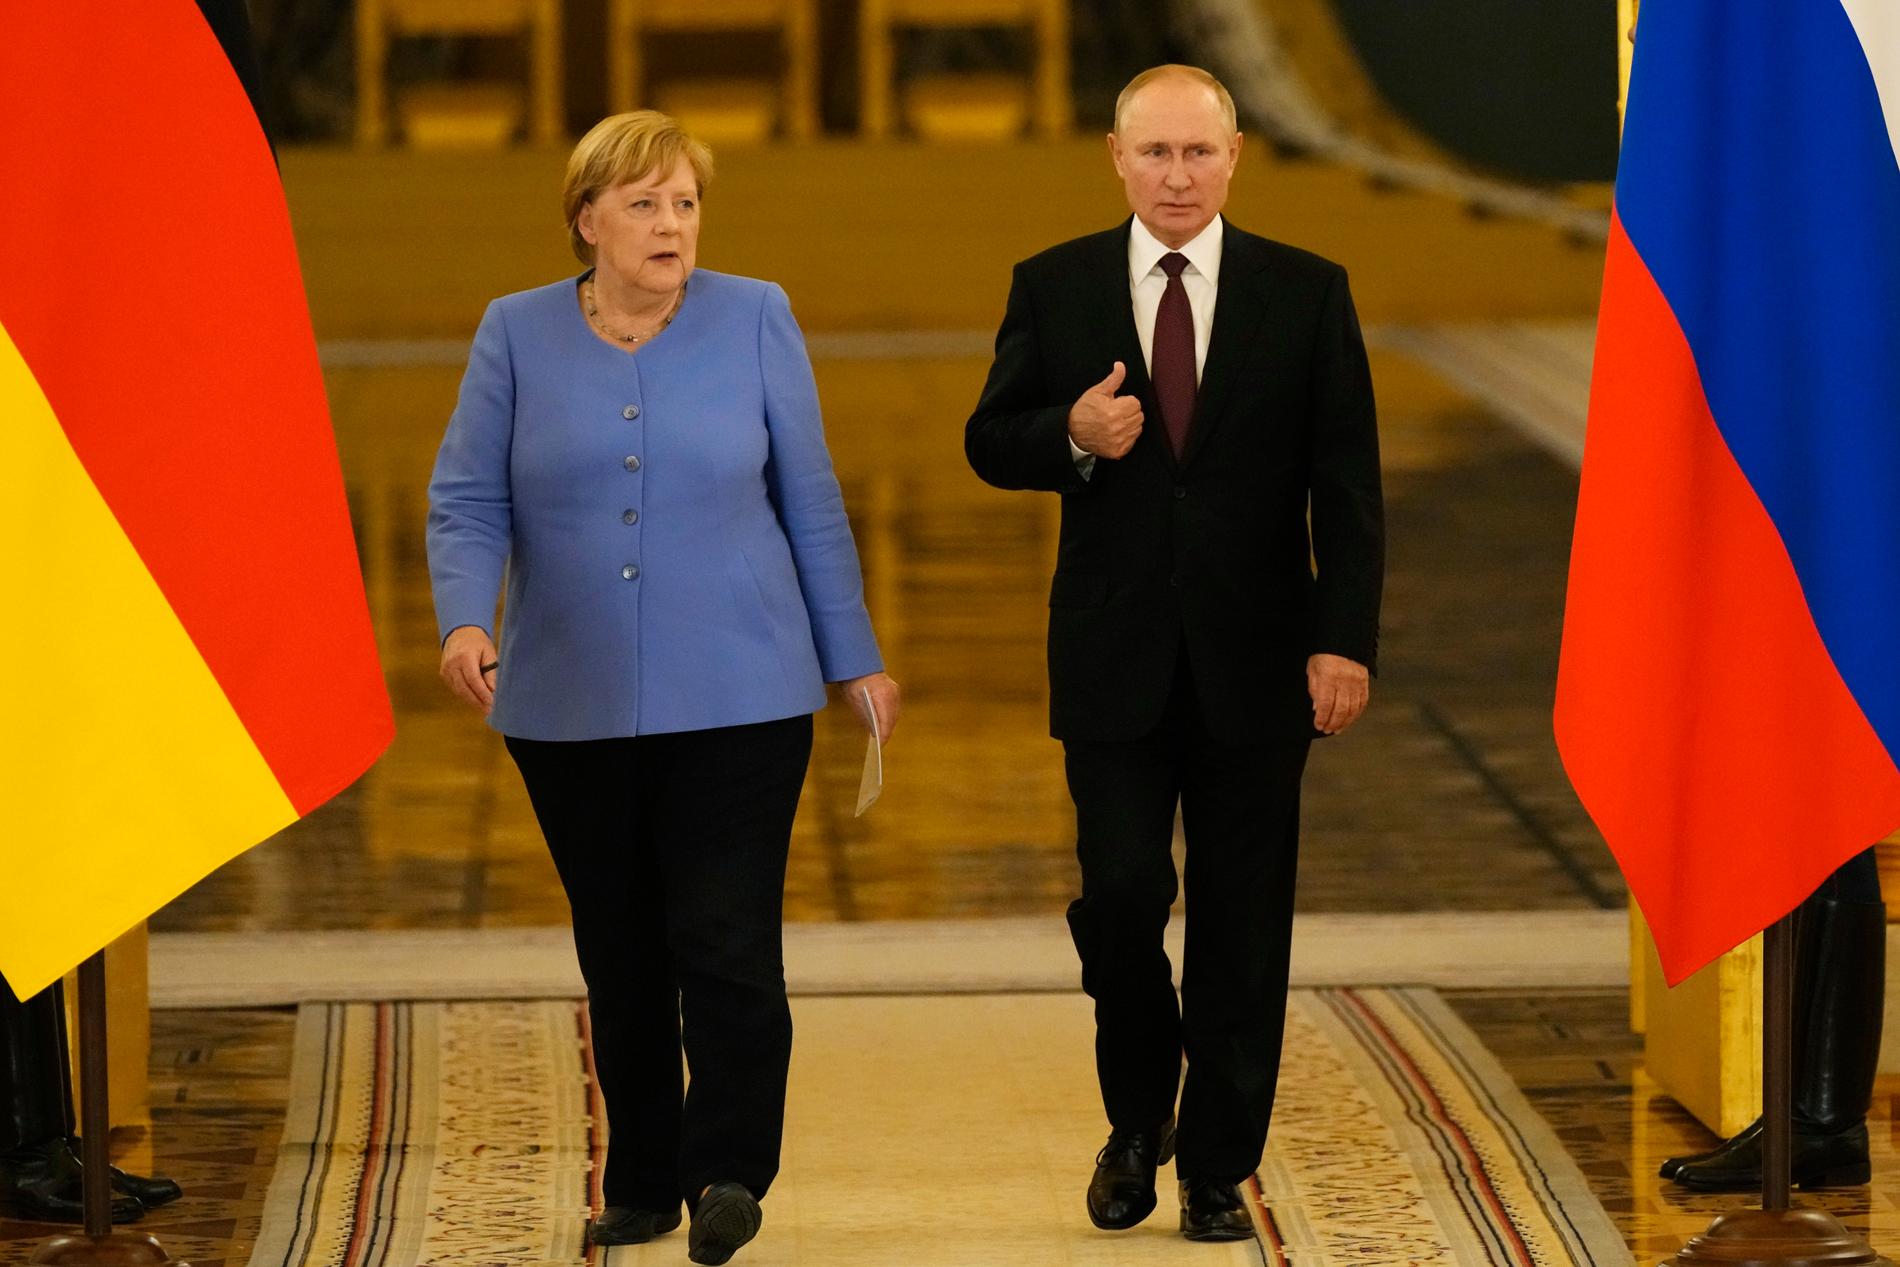 Tysklands tidigare förbundskansler Angela Merkel och Rysslands president Vladimir Putin under ett möte i Kreml i augusti 2021.